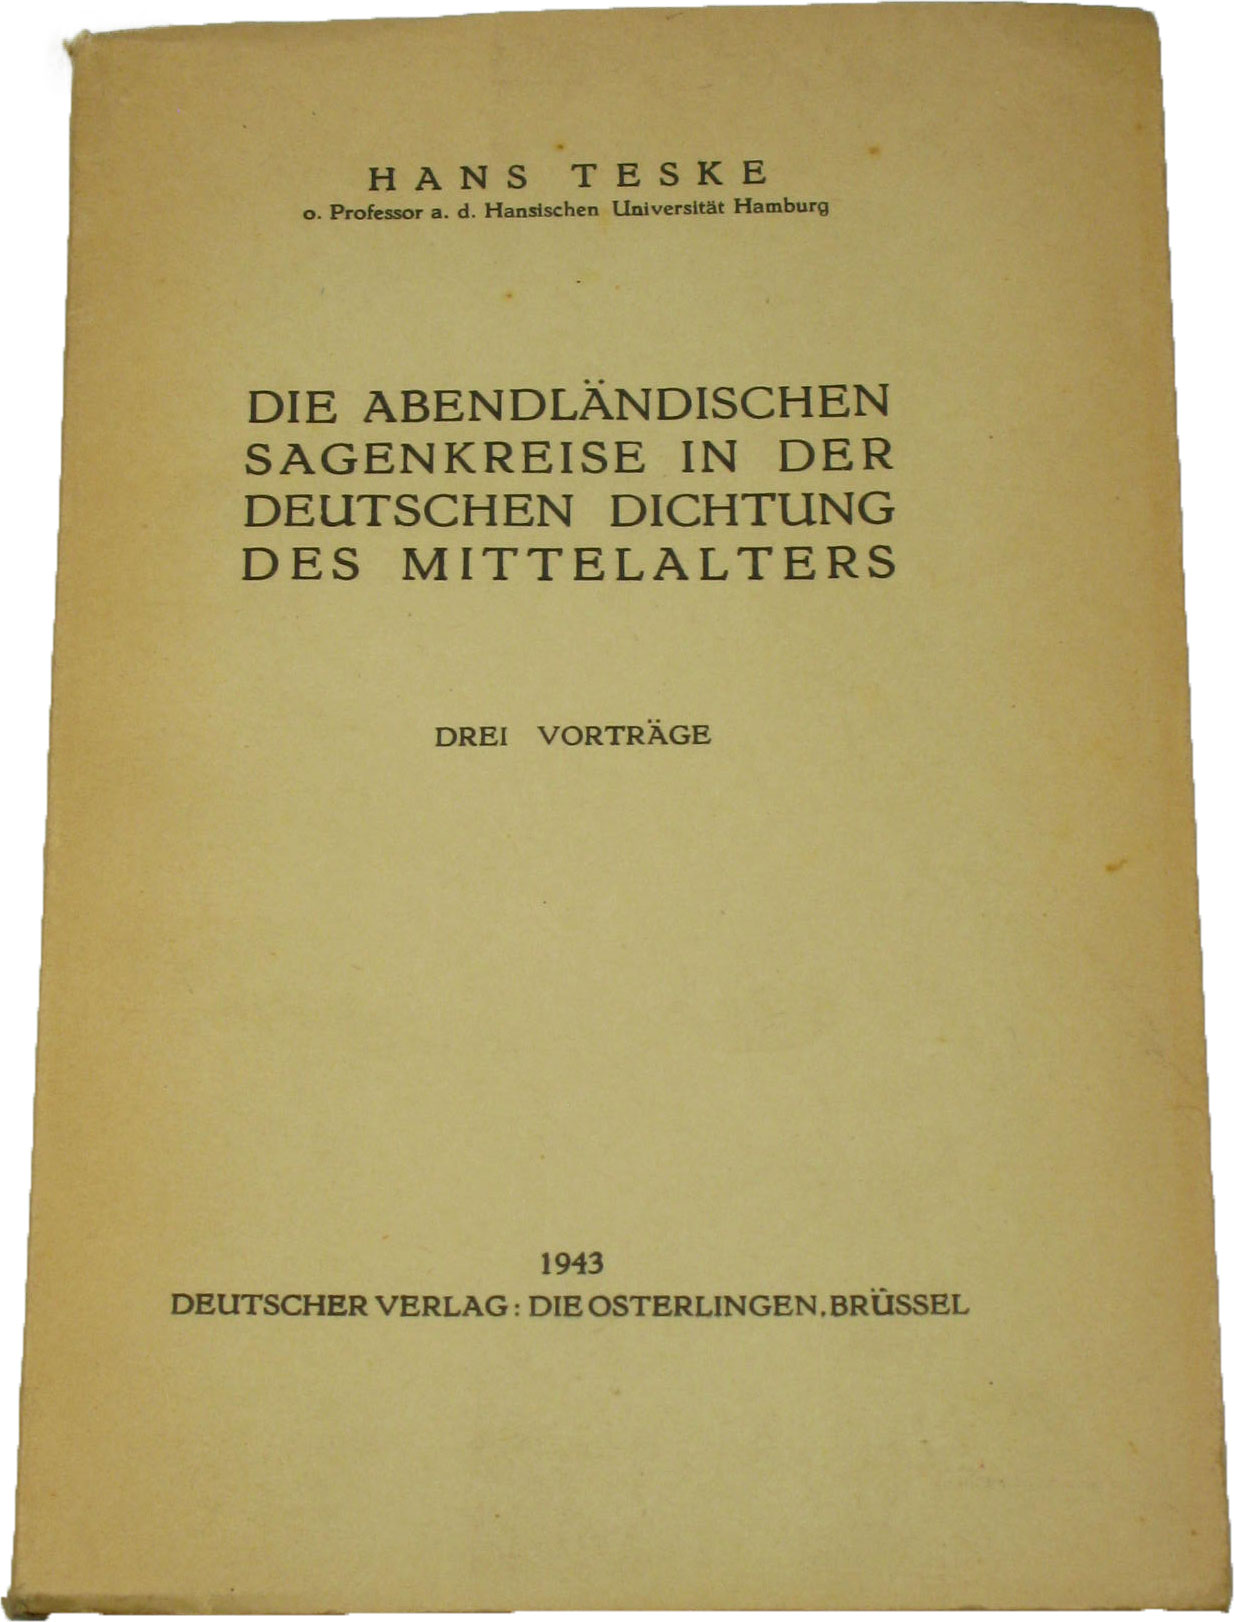 Teske, Hans:  Die abendländischen Sagenkreise in der deutschen Dichtung des Mittelalters 